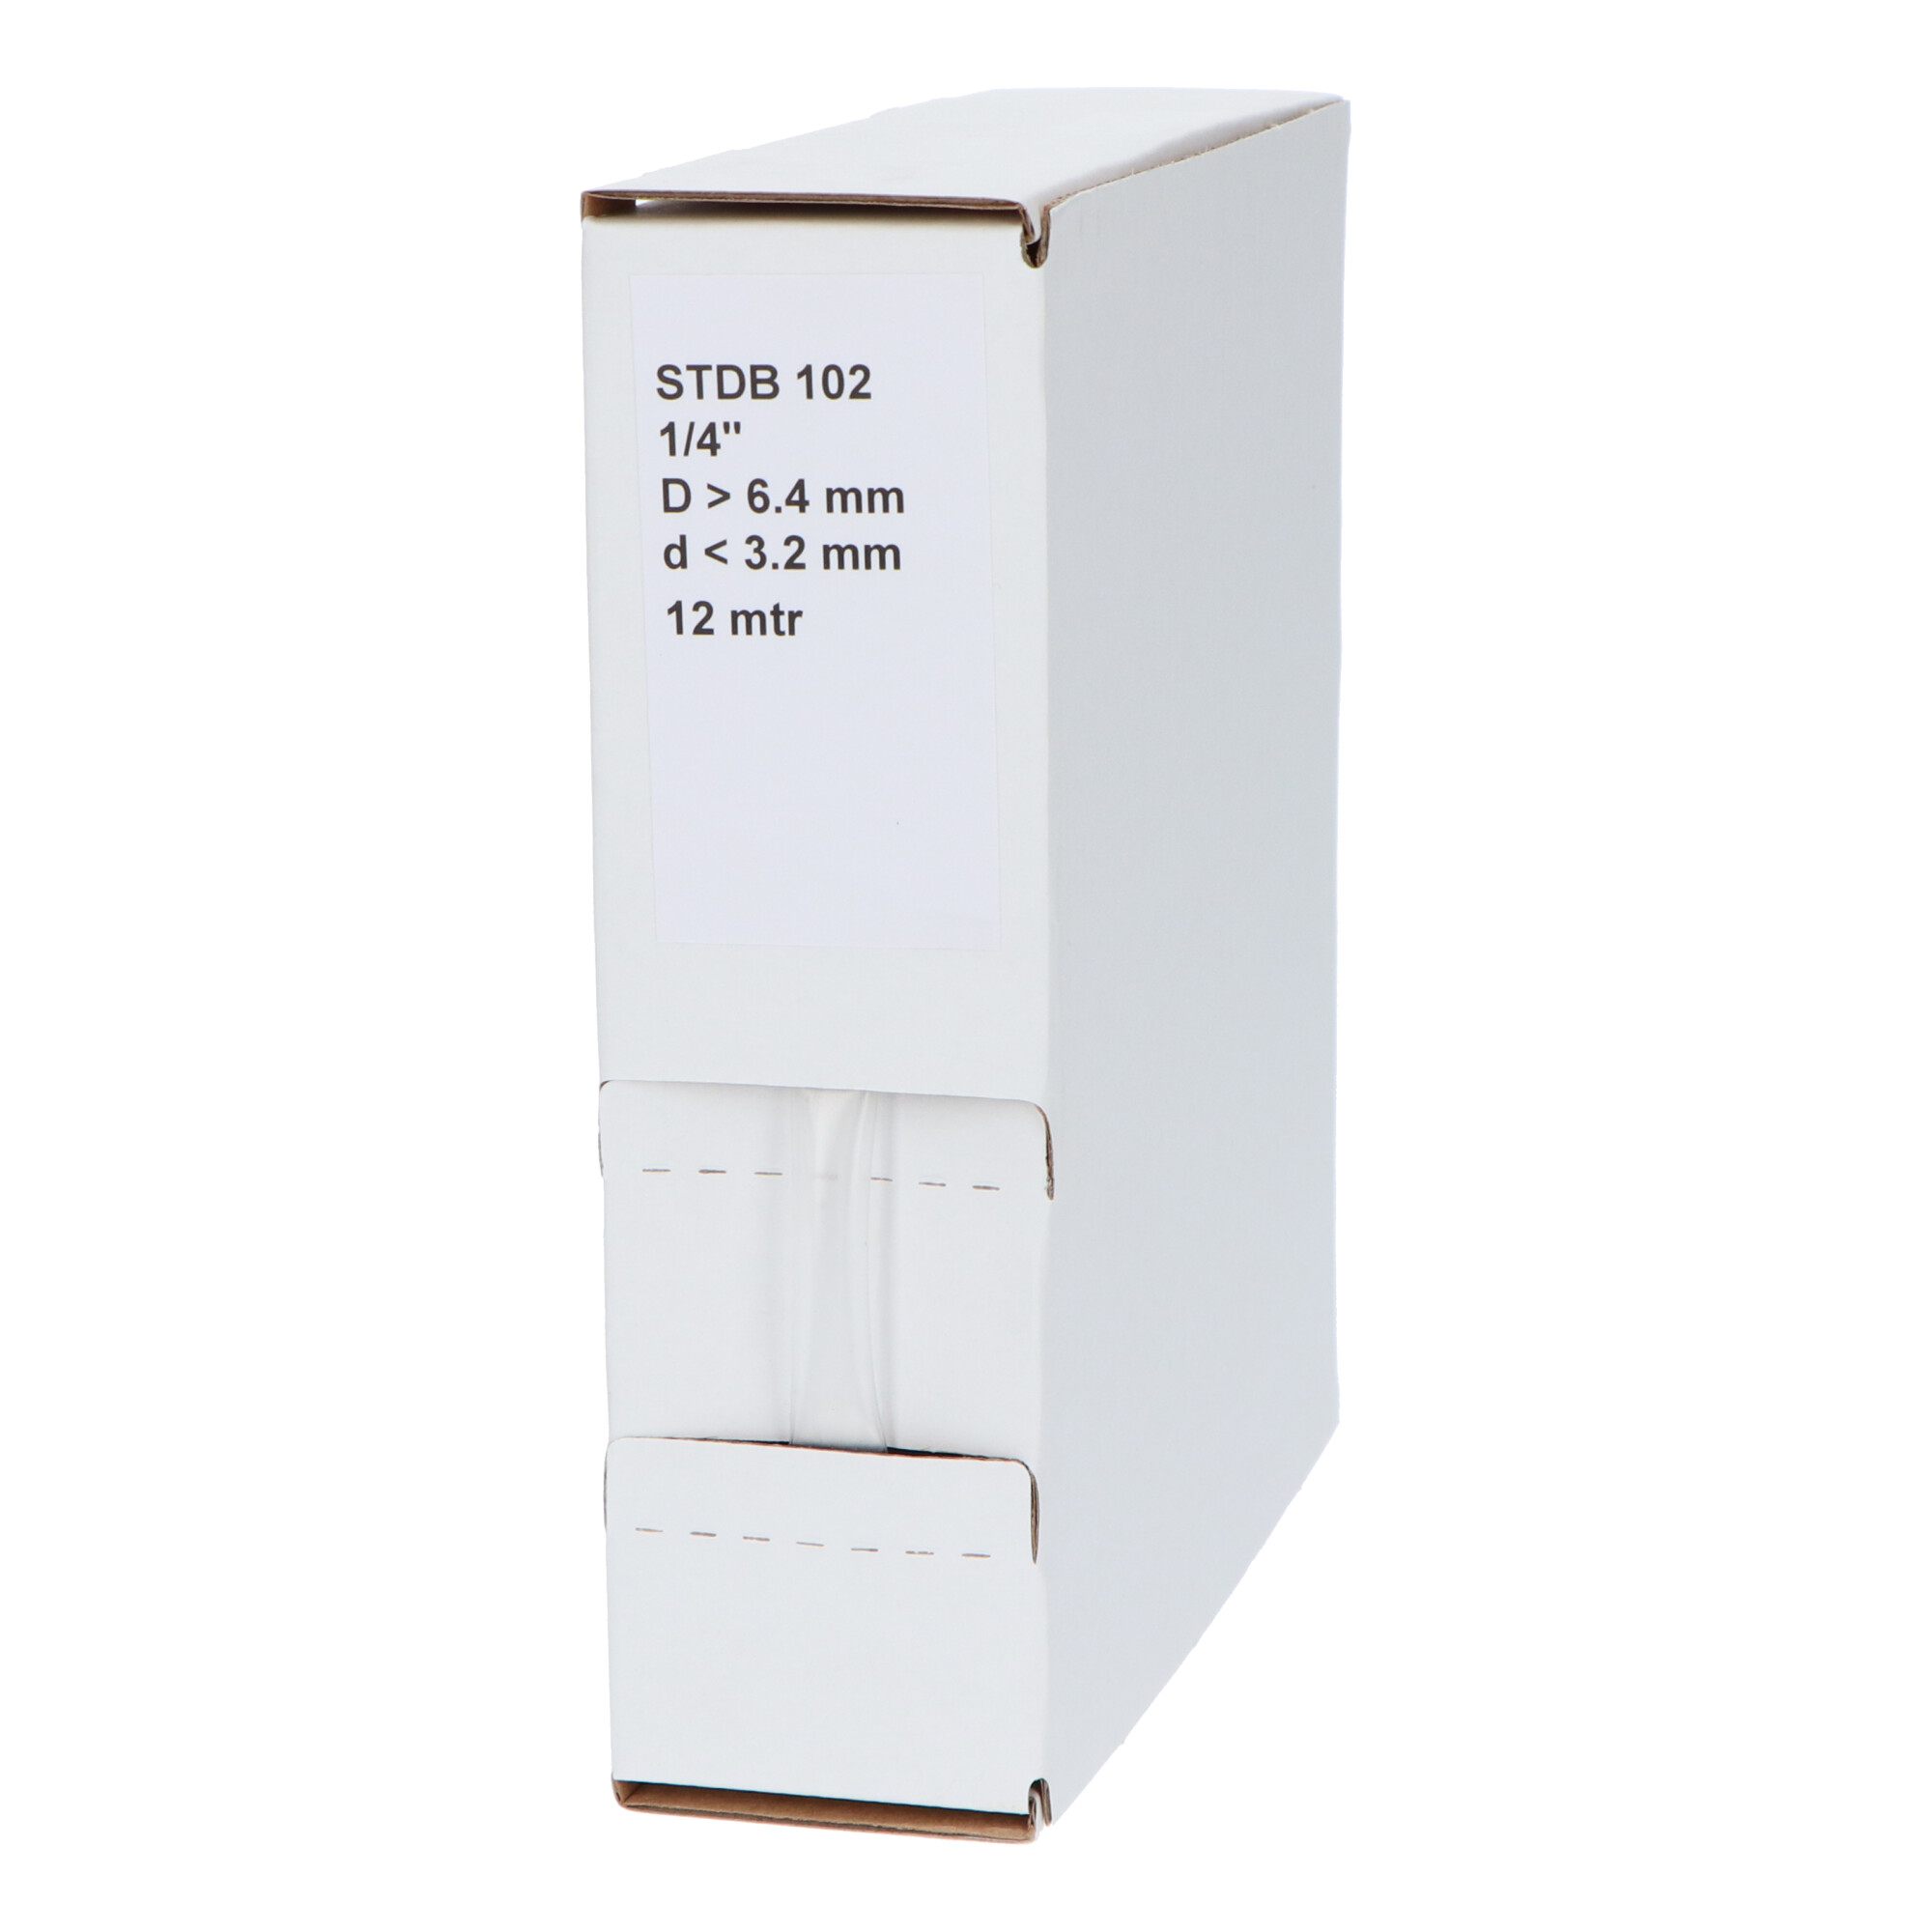 29-22001610G STDB 102 Krimpkous STDB 102 | 2:1 in dispenser box